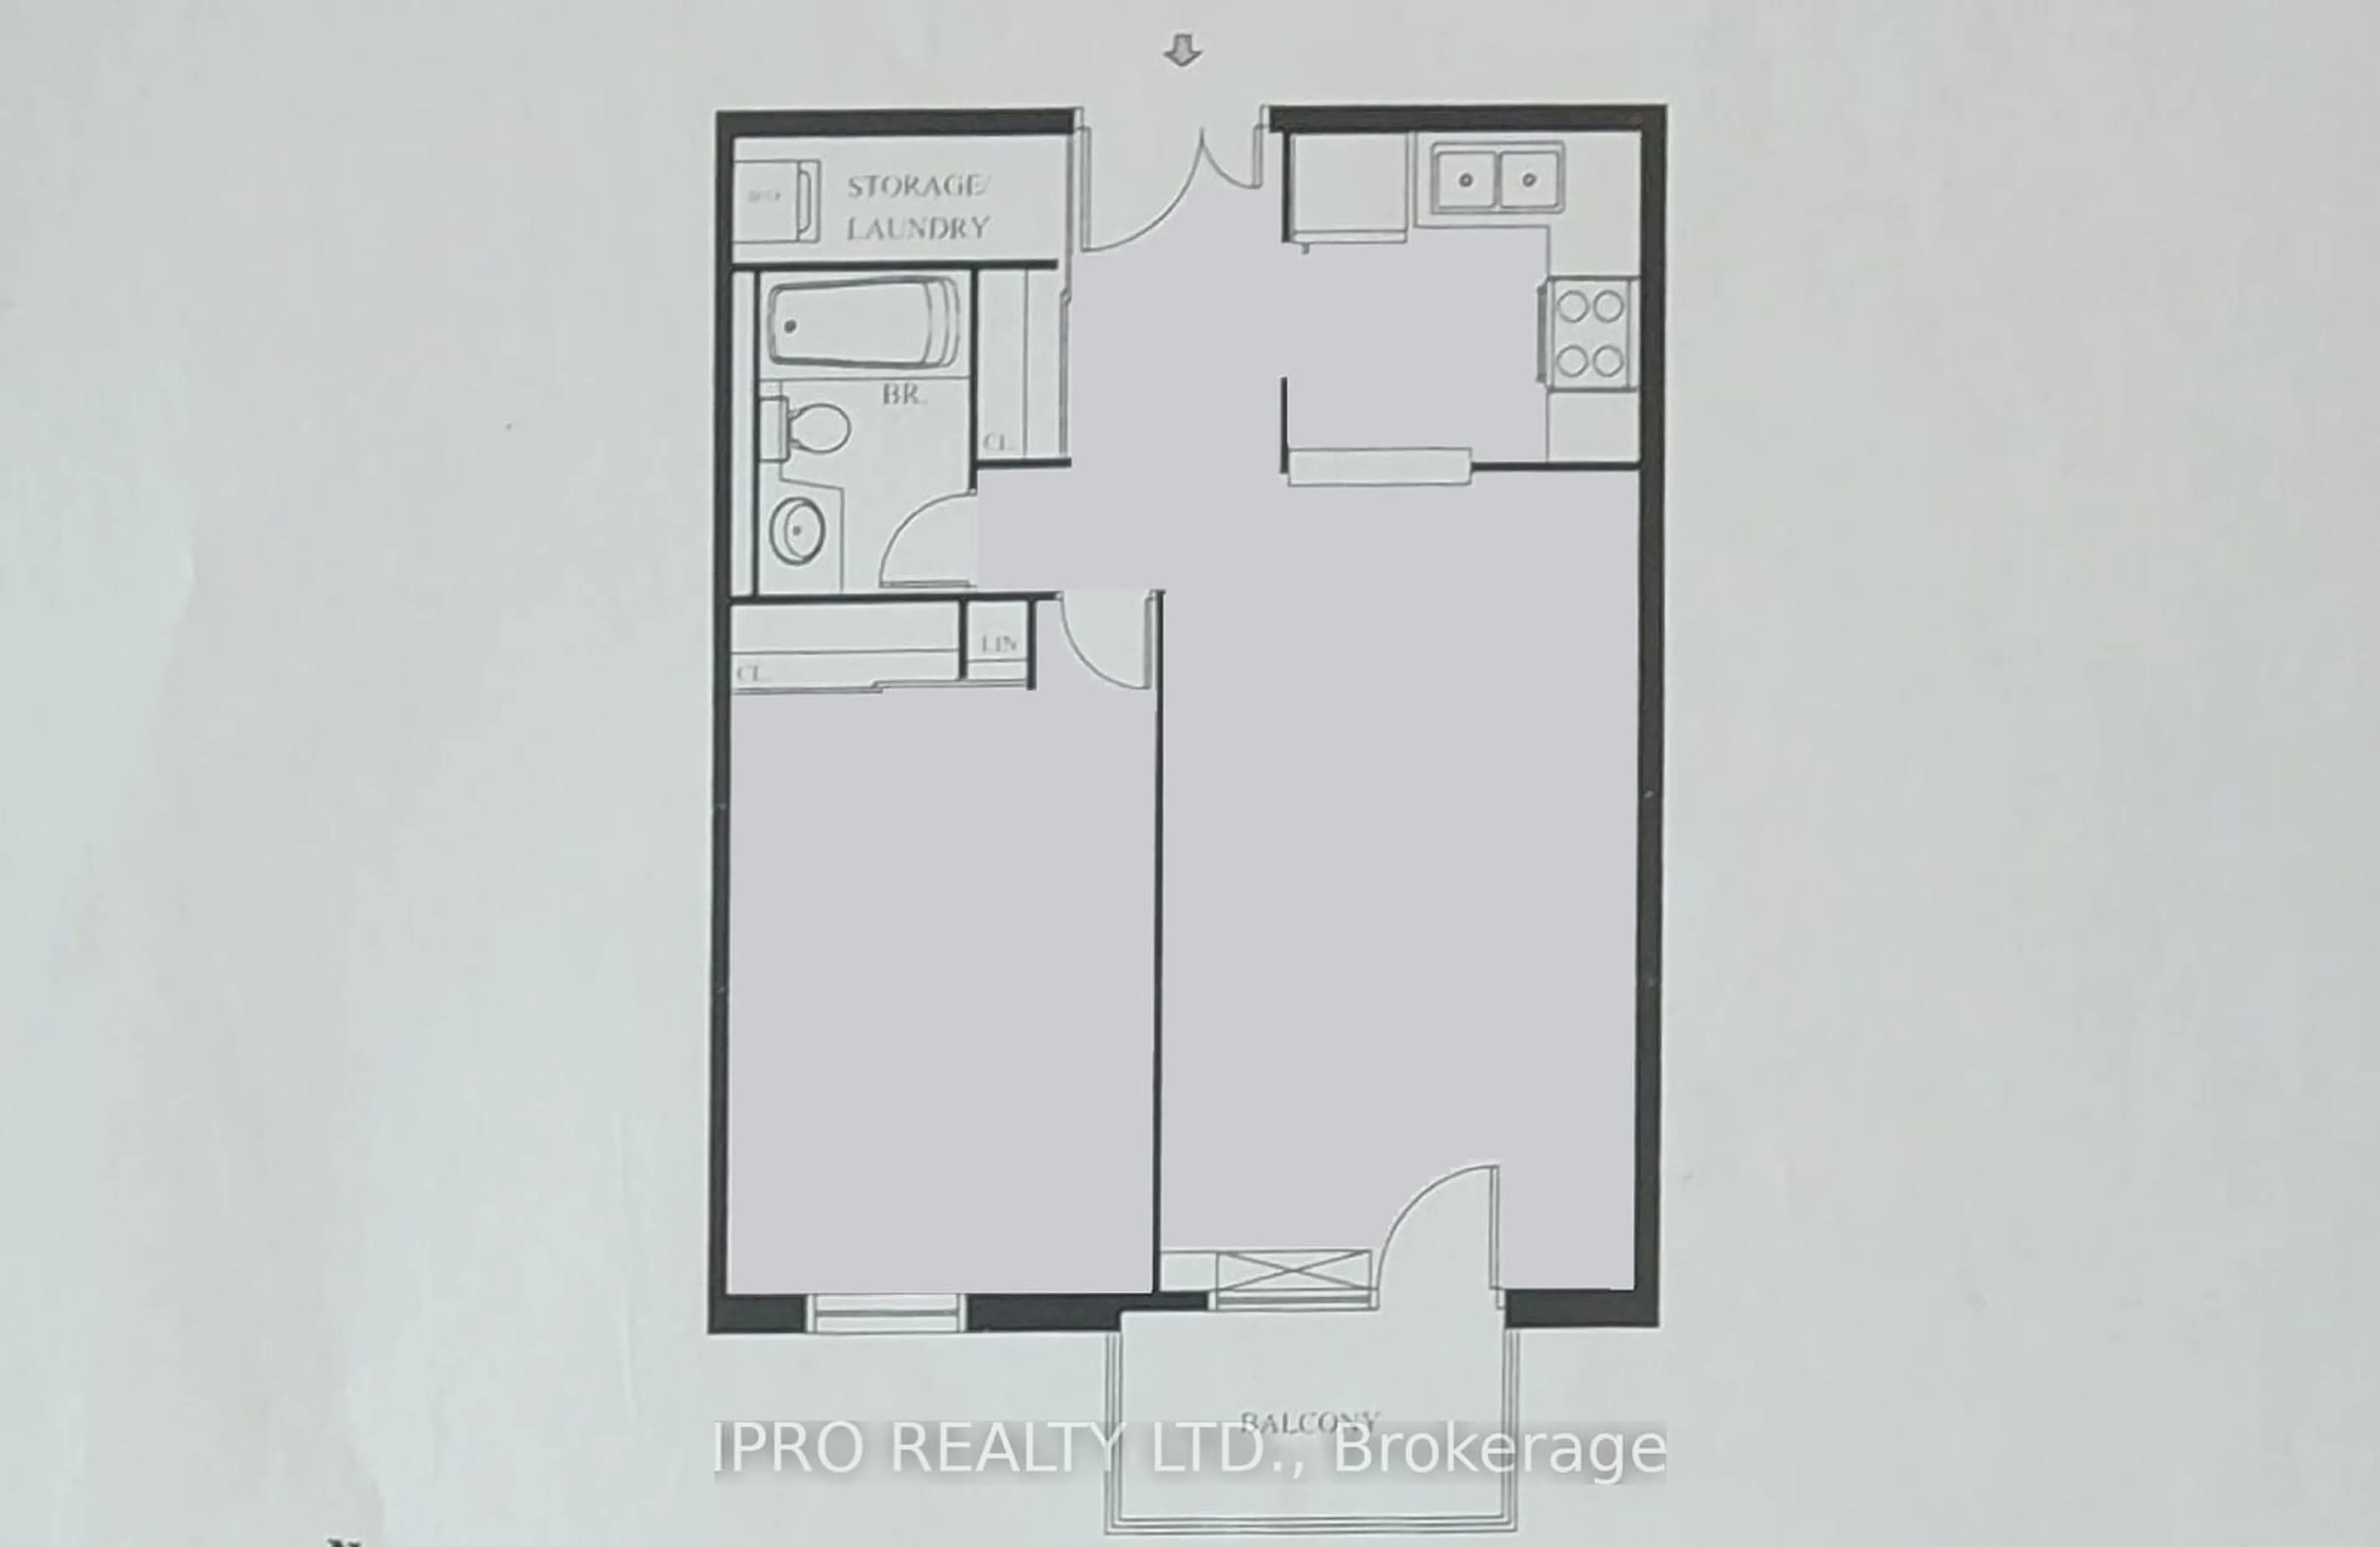 Floor plan for 6720 Glen Erin Dr #212, Mississauga Ontario L5N 3K8